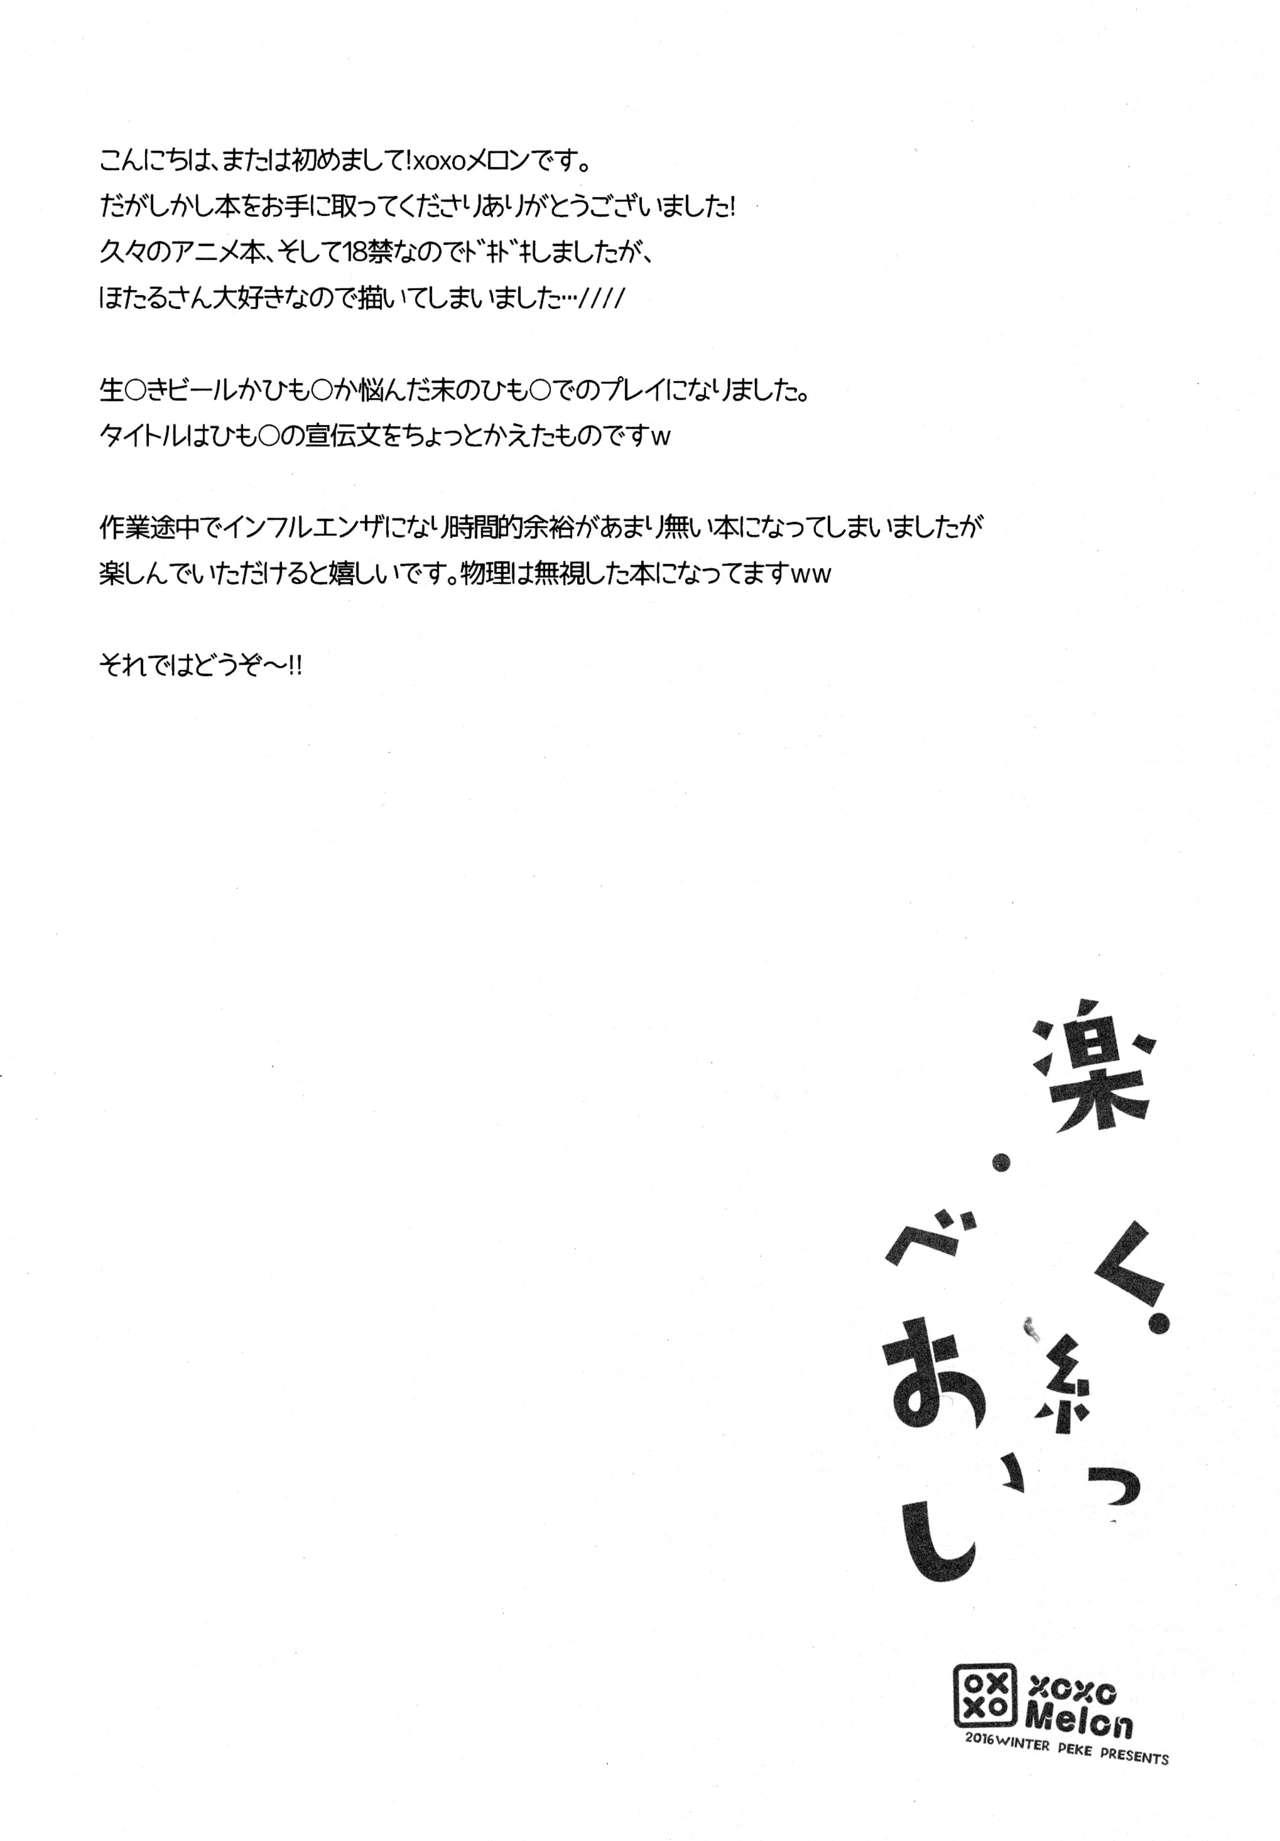 Twinks Tanoshiku Shibatte Tabete Oishii - Dagashi kashi Submissive - Page 4